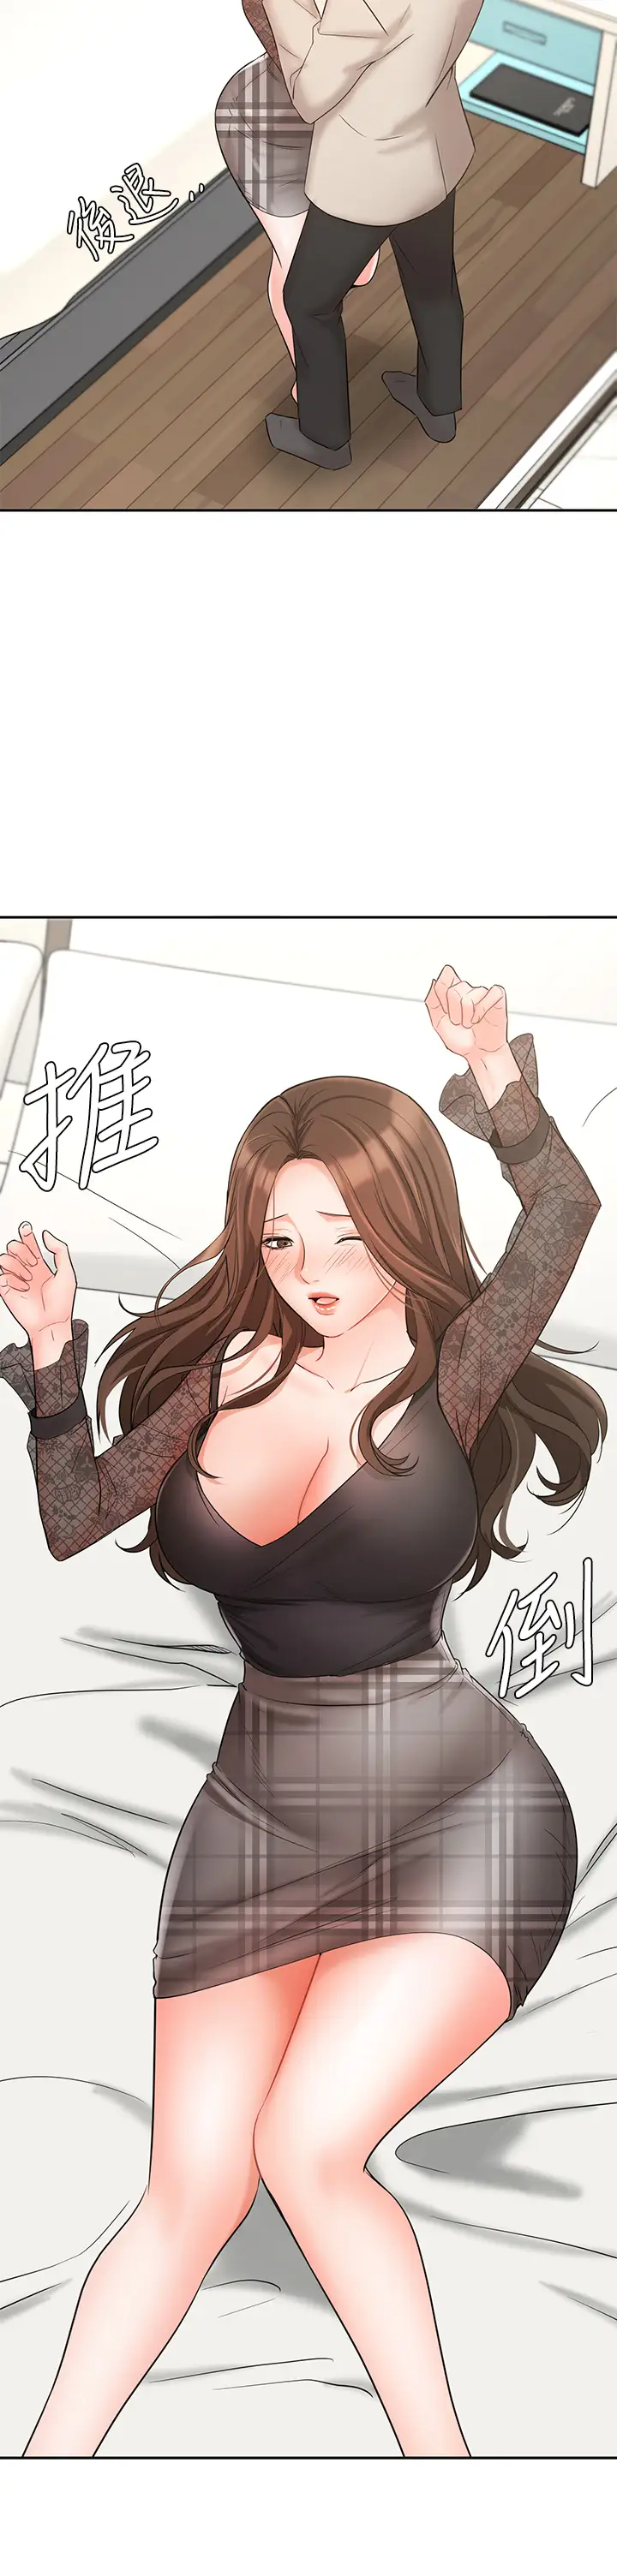 韩国污漫画 業績女王 第19话业绩女王令人迷醉的诱惑 19